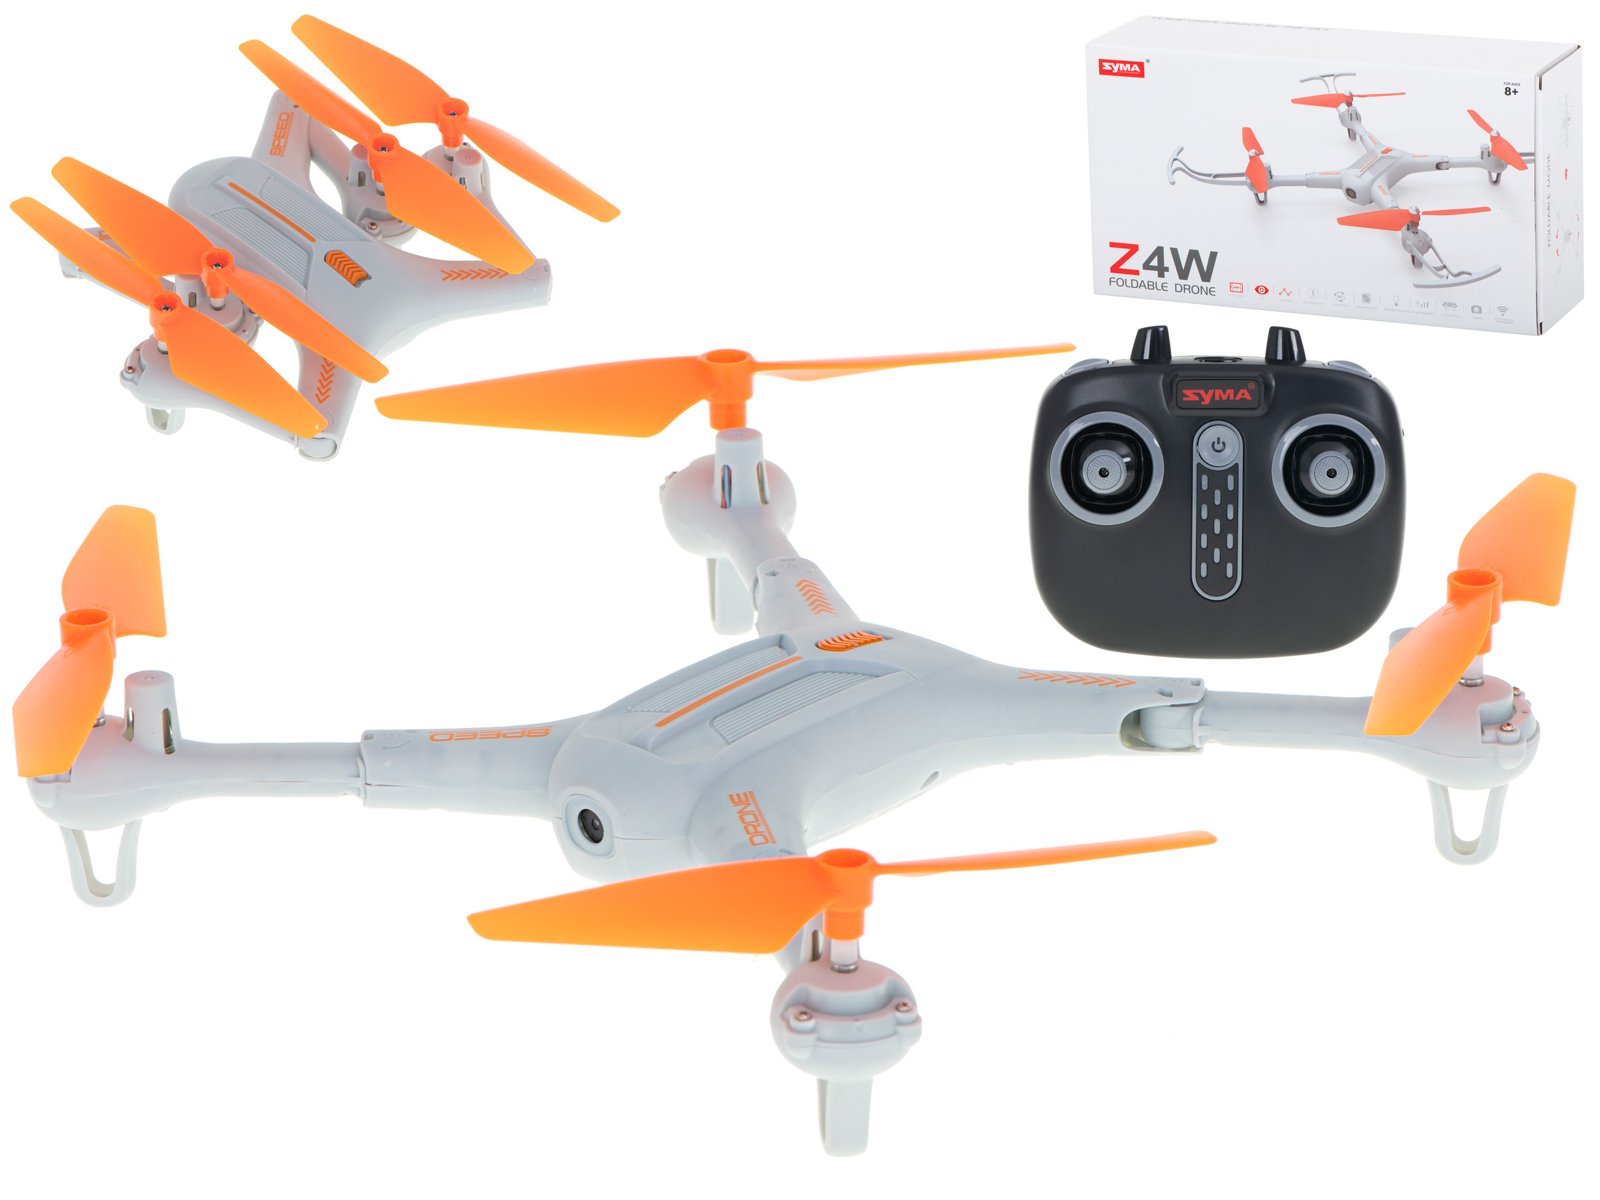 SYMA Z4W R/C Drone with camera 480P / WIFI